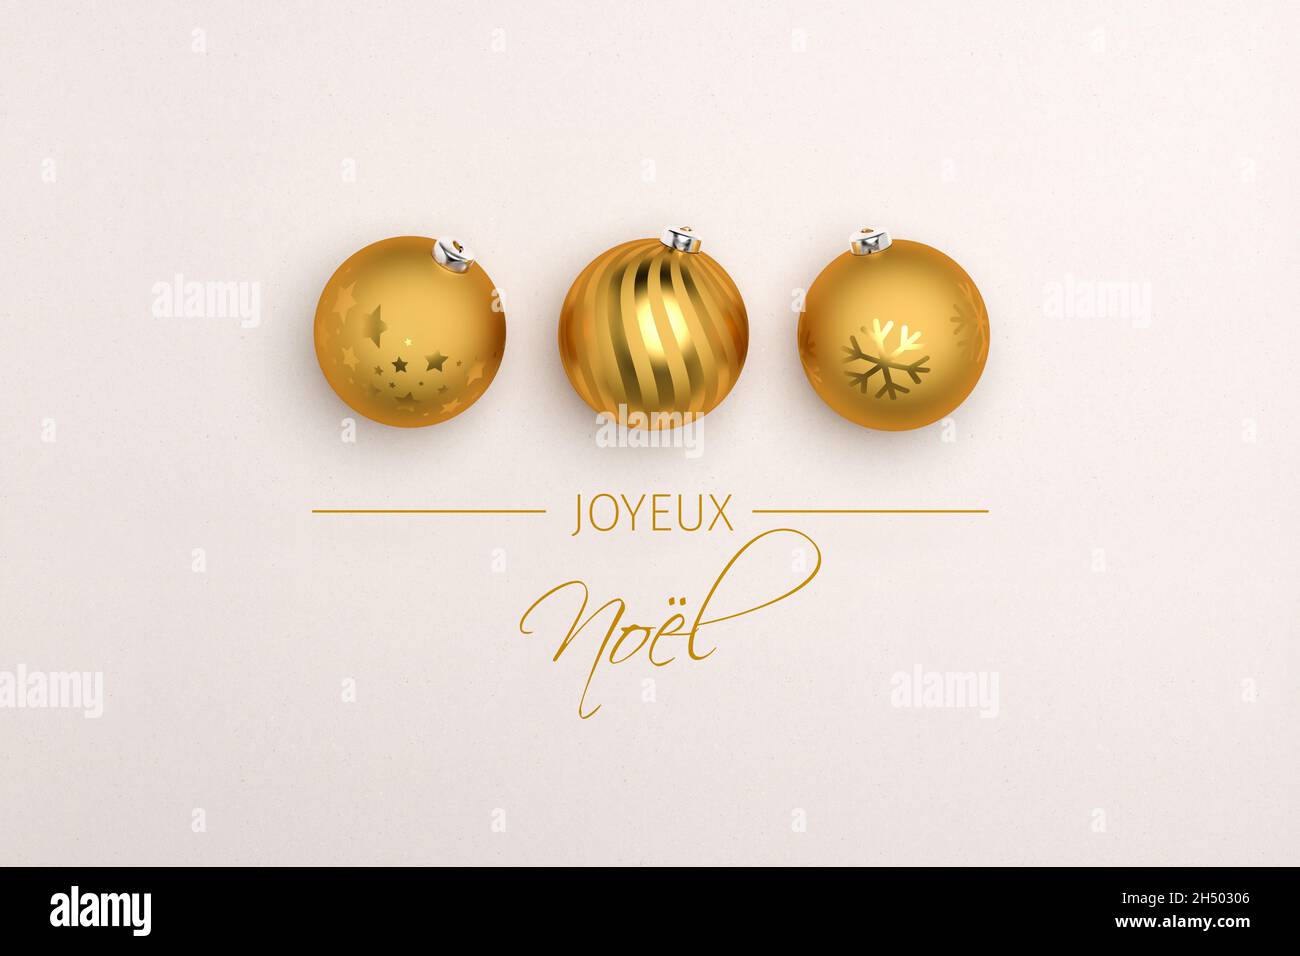 Tre baubles dorati di natale su sfondo cartaceo. Messaggio francese "Joyeux Noël" (buon Natale) qui sotto. Foto Stock